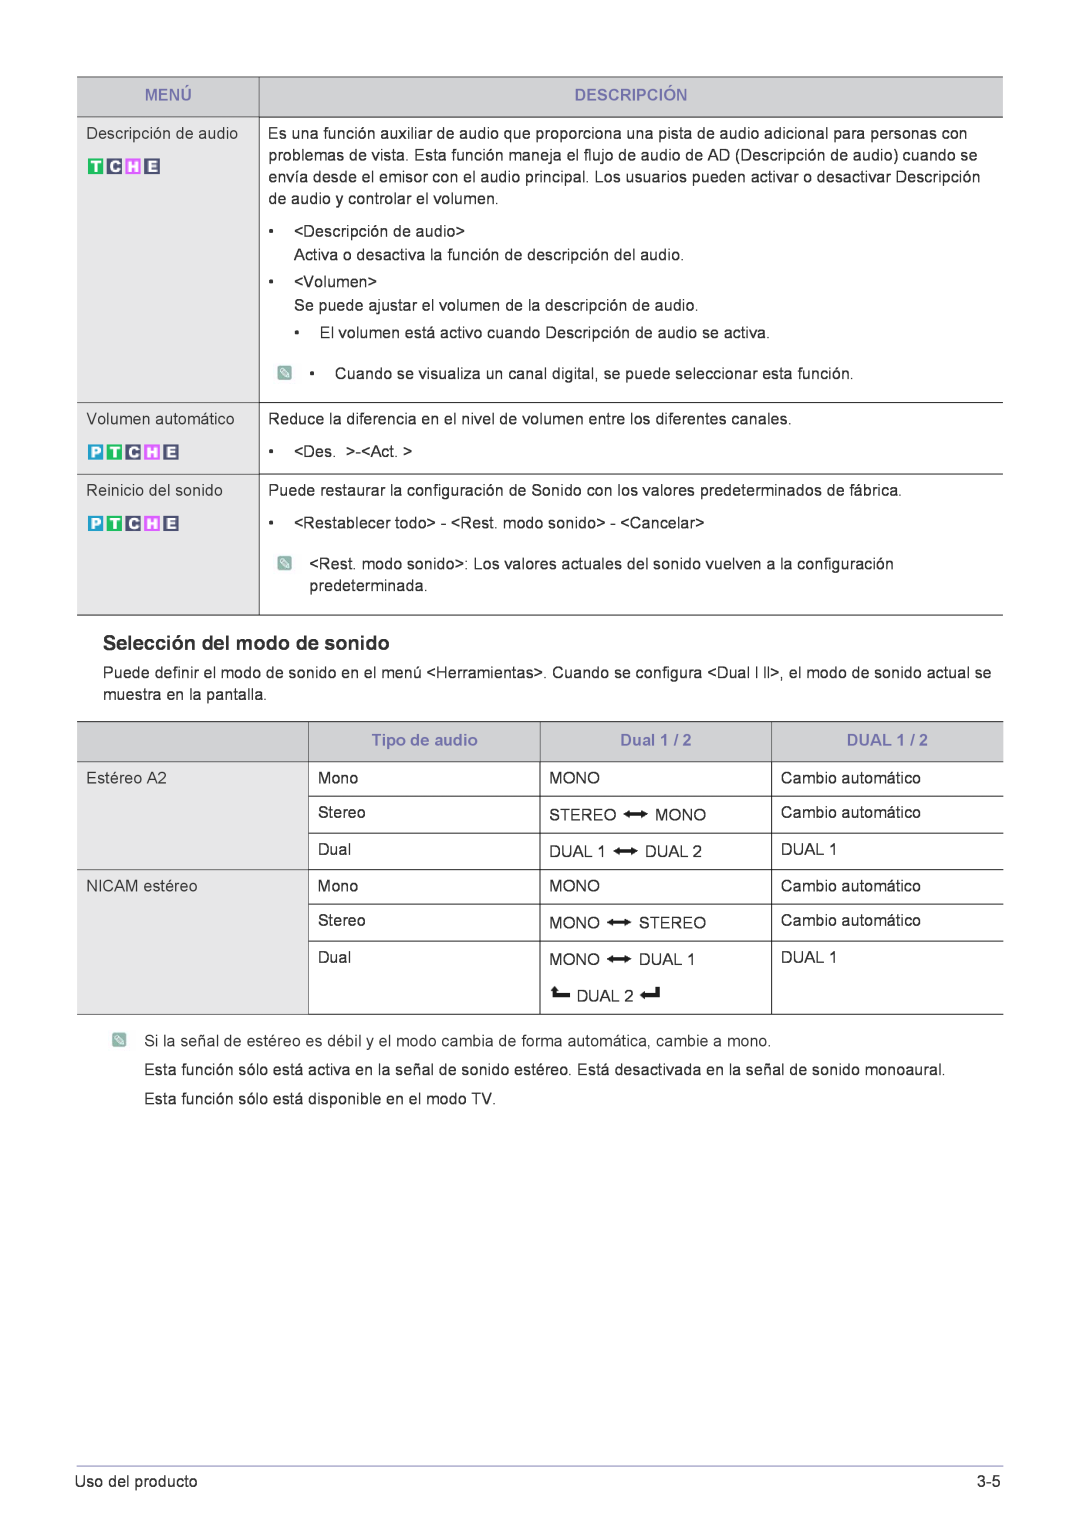 Samsung LS22FMDGF/EN manual Selección del modo de sonido, Tipo de audio, Dual 1, DUAL 1, Menú, Descripción 